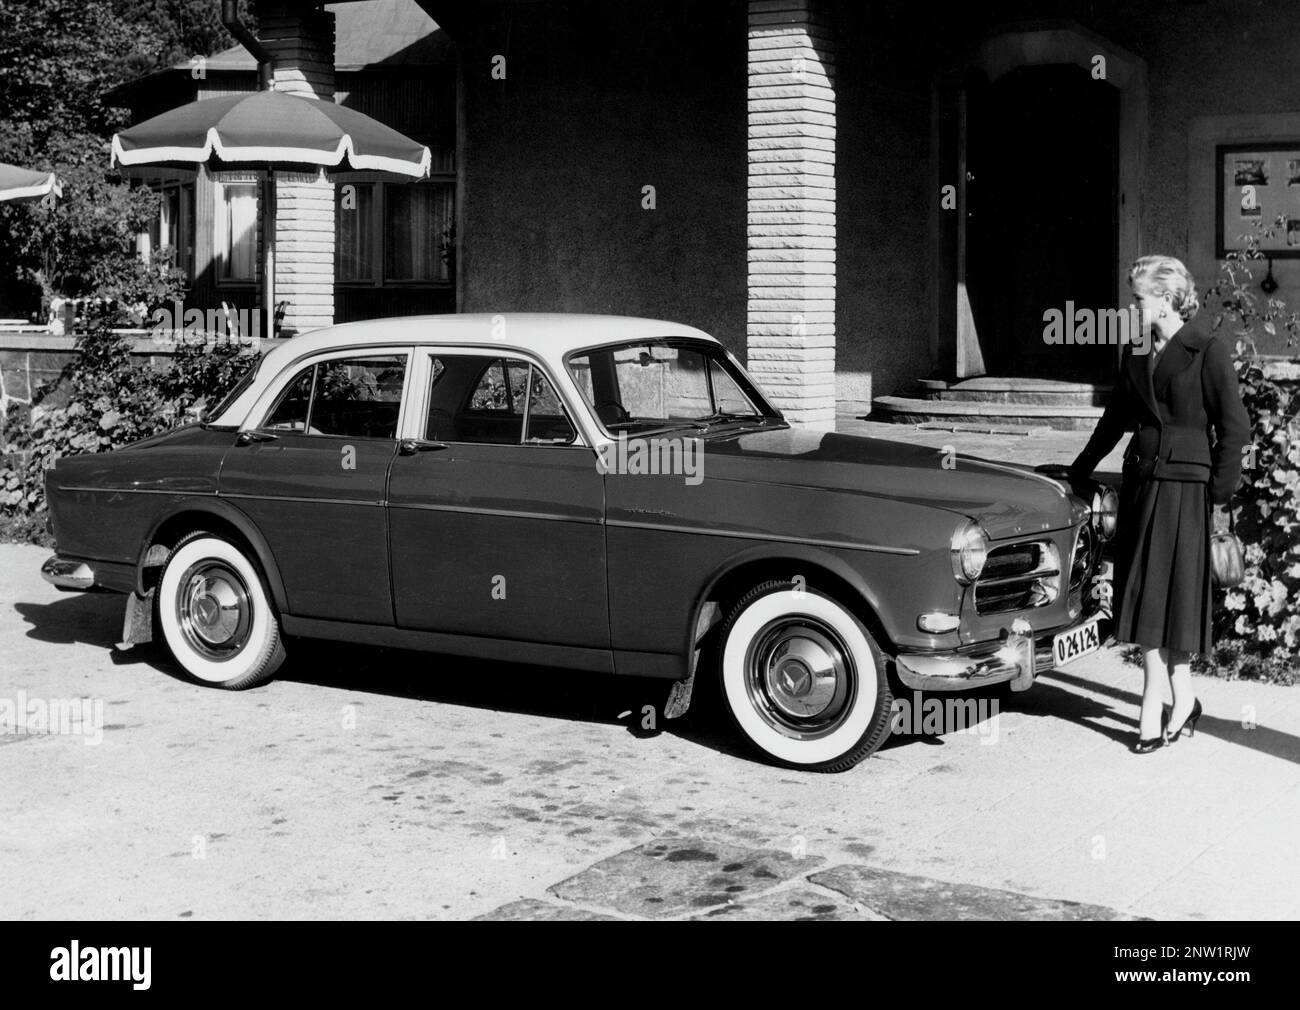 Volvo Amazon. Ein Personenkraftwagen von Volvo, der am 3. August 1956 für Händler in Skövde und am 1-2. September 1956 für die Öffentlichkeit eingeführt wurde. Volvos Automodell Volvo Amazon wurde als Nachfolger des Volvo PV 444 eingeführt. Das abgebildete Fahrzeug ist einer von zwei Prototypen des Fahrzeugs mit der Fahrgestellnummer X2, die in den ersten Verkaufsbroschüren für Amazon mit dem Modell regnr 024124 verwendet wurden. Die Farbe des Autos war rot und weiß und es war Rechtslenkung. Stockfoto